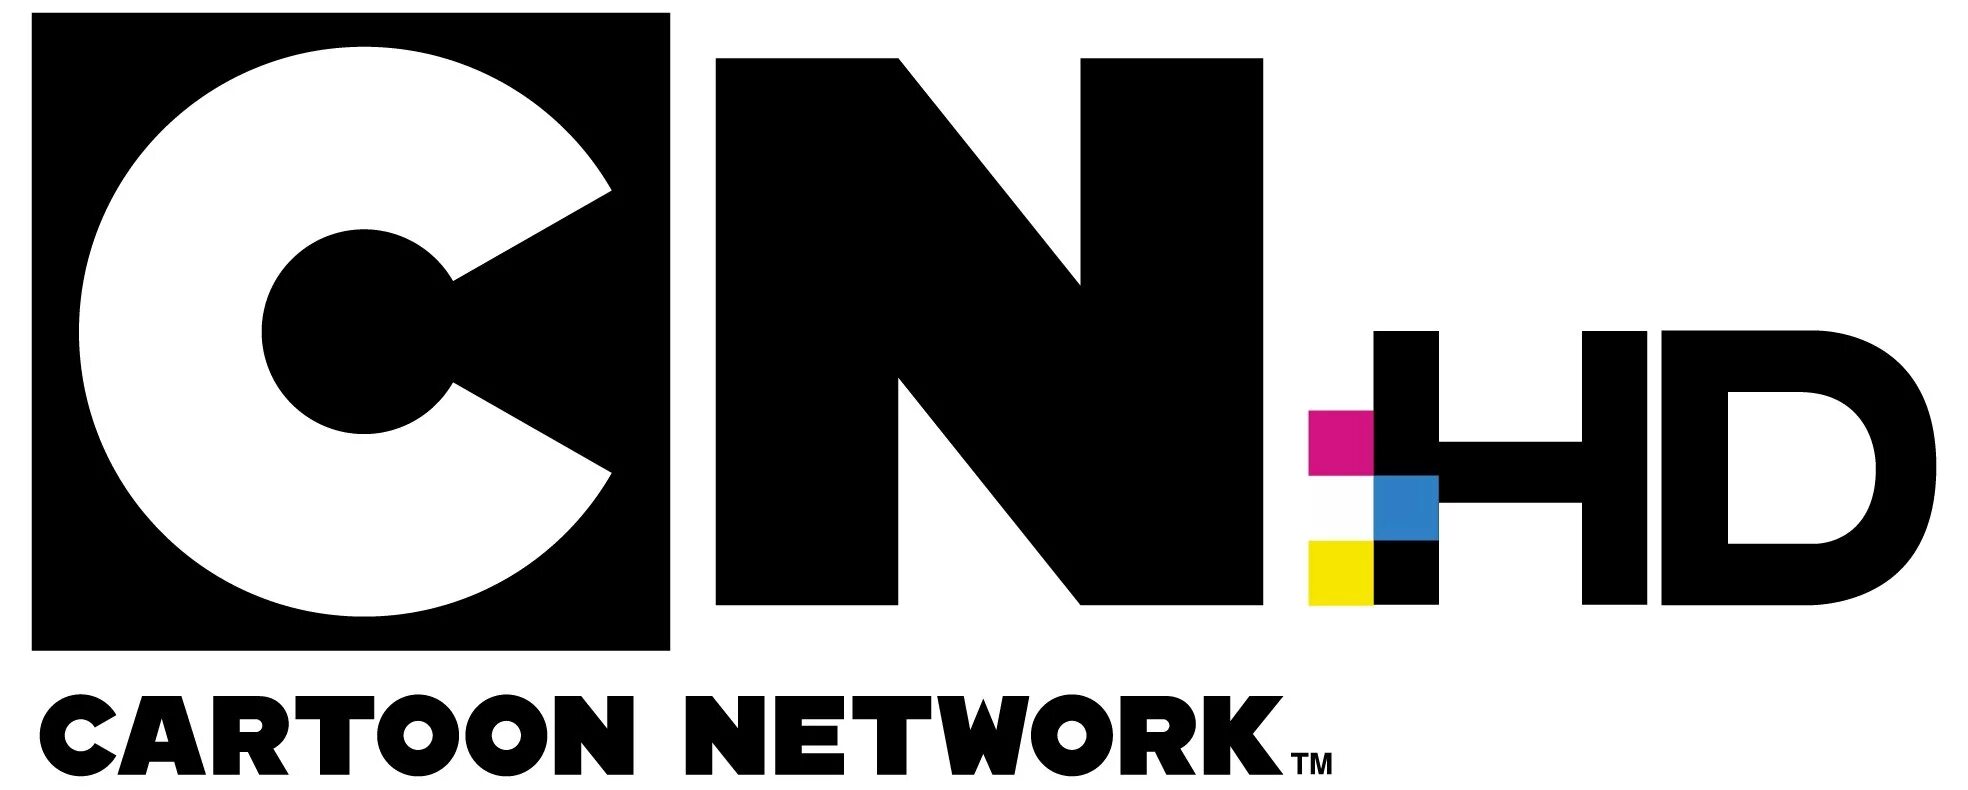 Канал Картун нетворк. CN логотип.